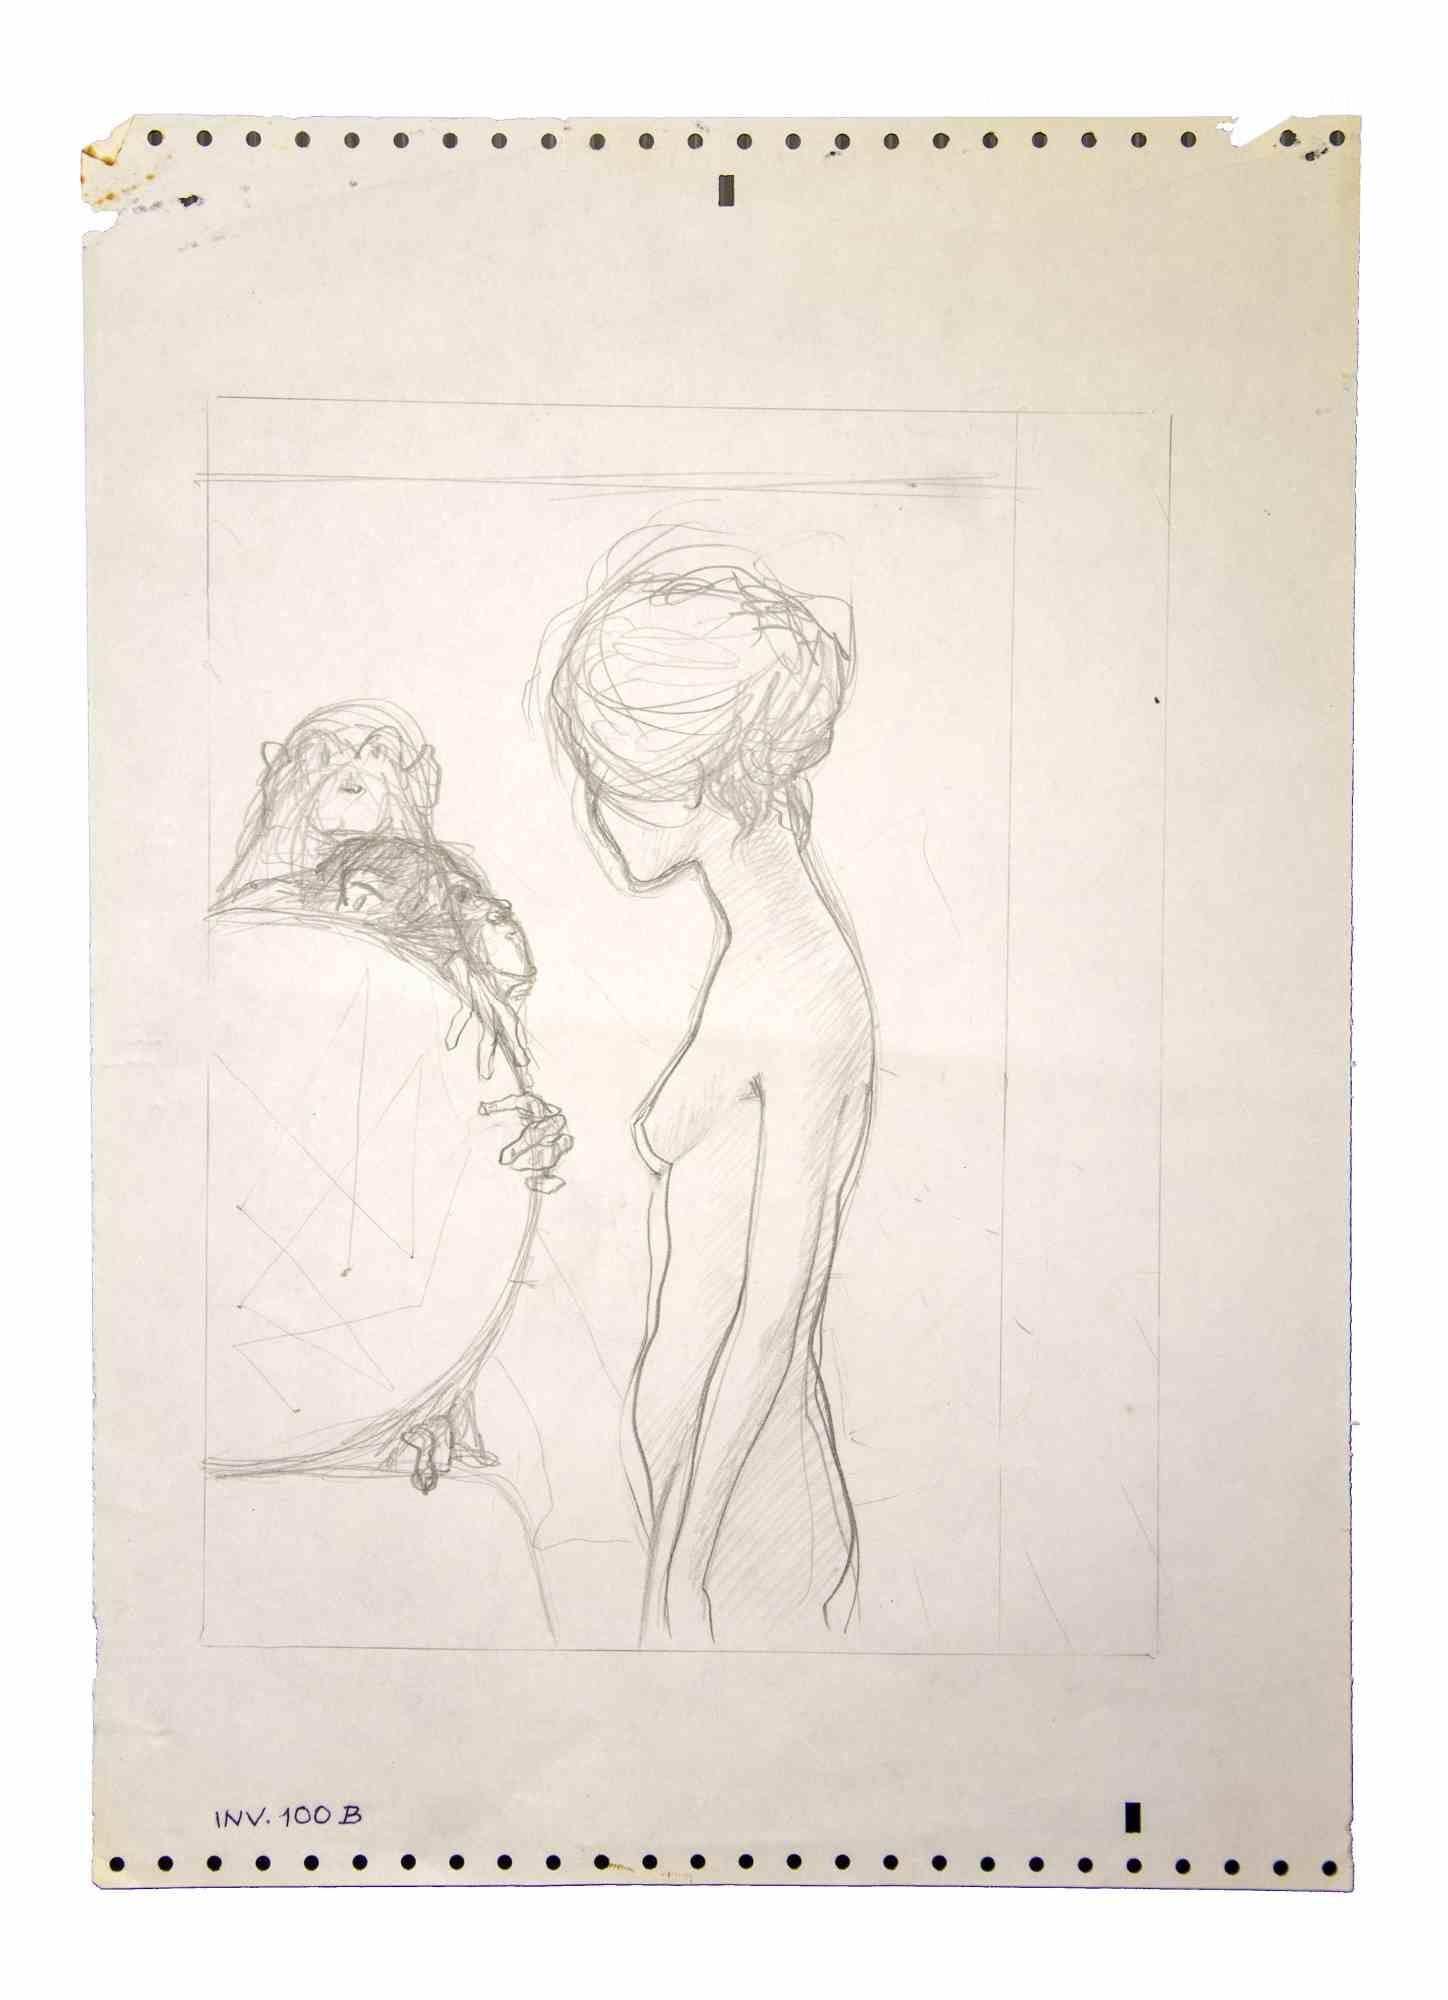 Nude with Monkeys est une œuvre d'art originale réalisée dans les années 1970 par l'artiste italien Contemporary.  Leo Guida  (1992 - 2017).

Crayon original sur papier.

Bonnes conditions.

Leo Guida  (1992 - 2017). Sensible aux questions